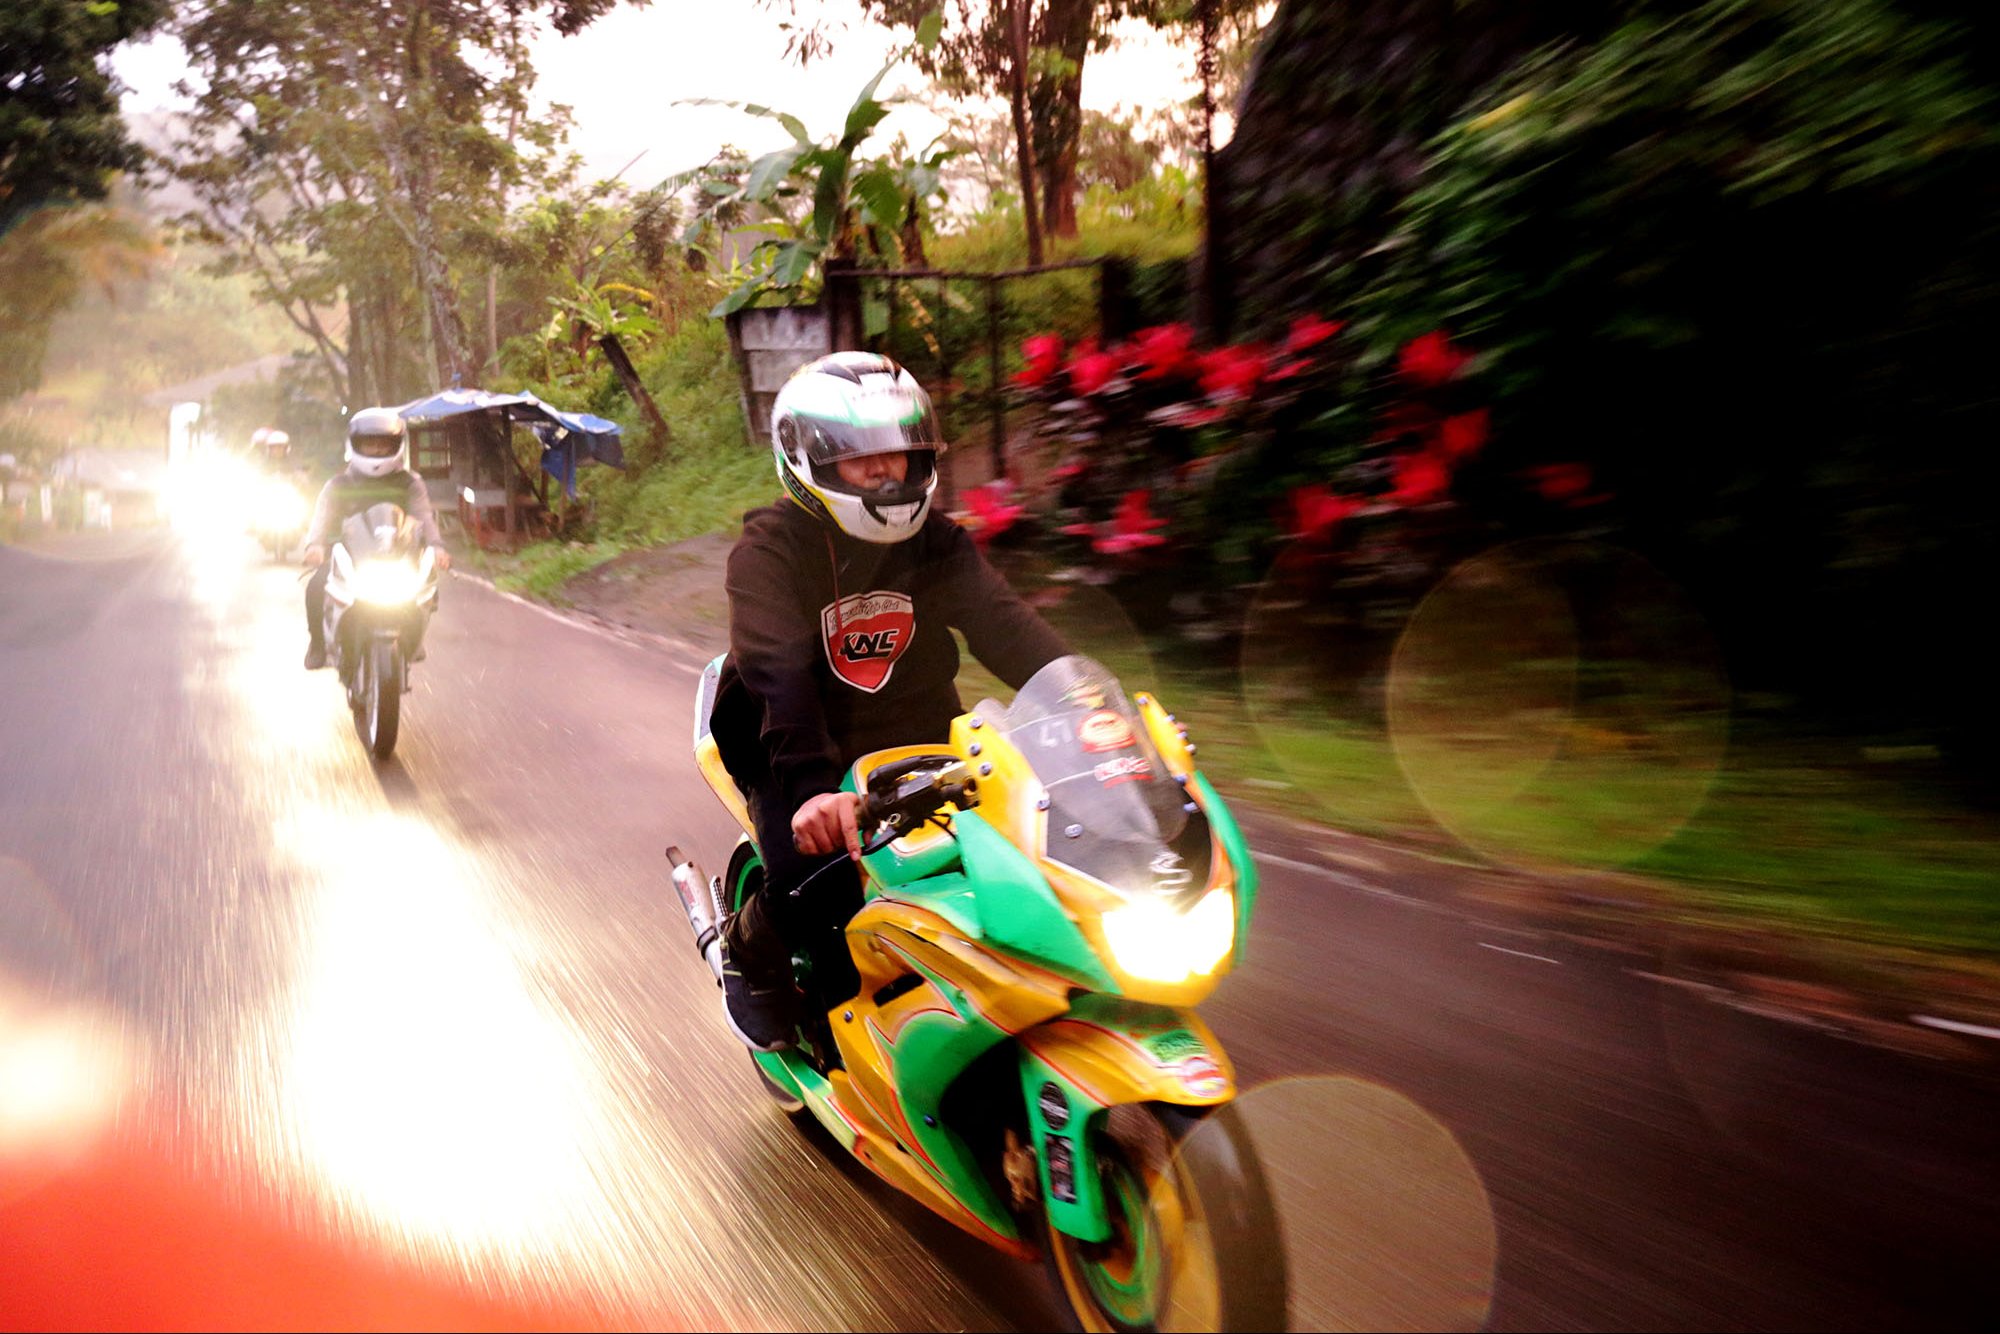 Gilang anggota Kawasaki Ninja Club Cikarang menaiki motor saat touring, Bogor, Jawa Barat (7/1).\r\n